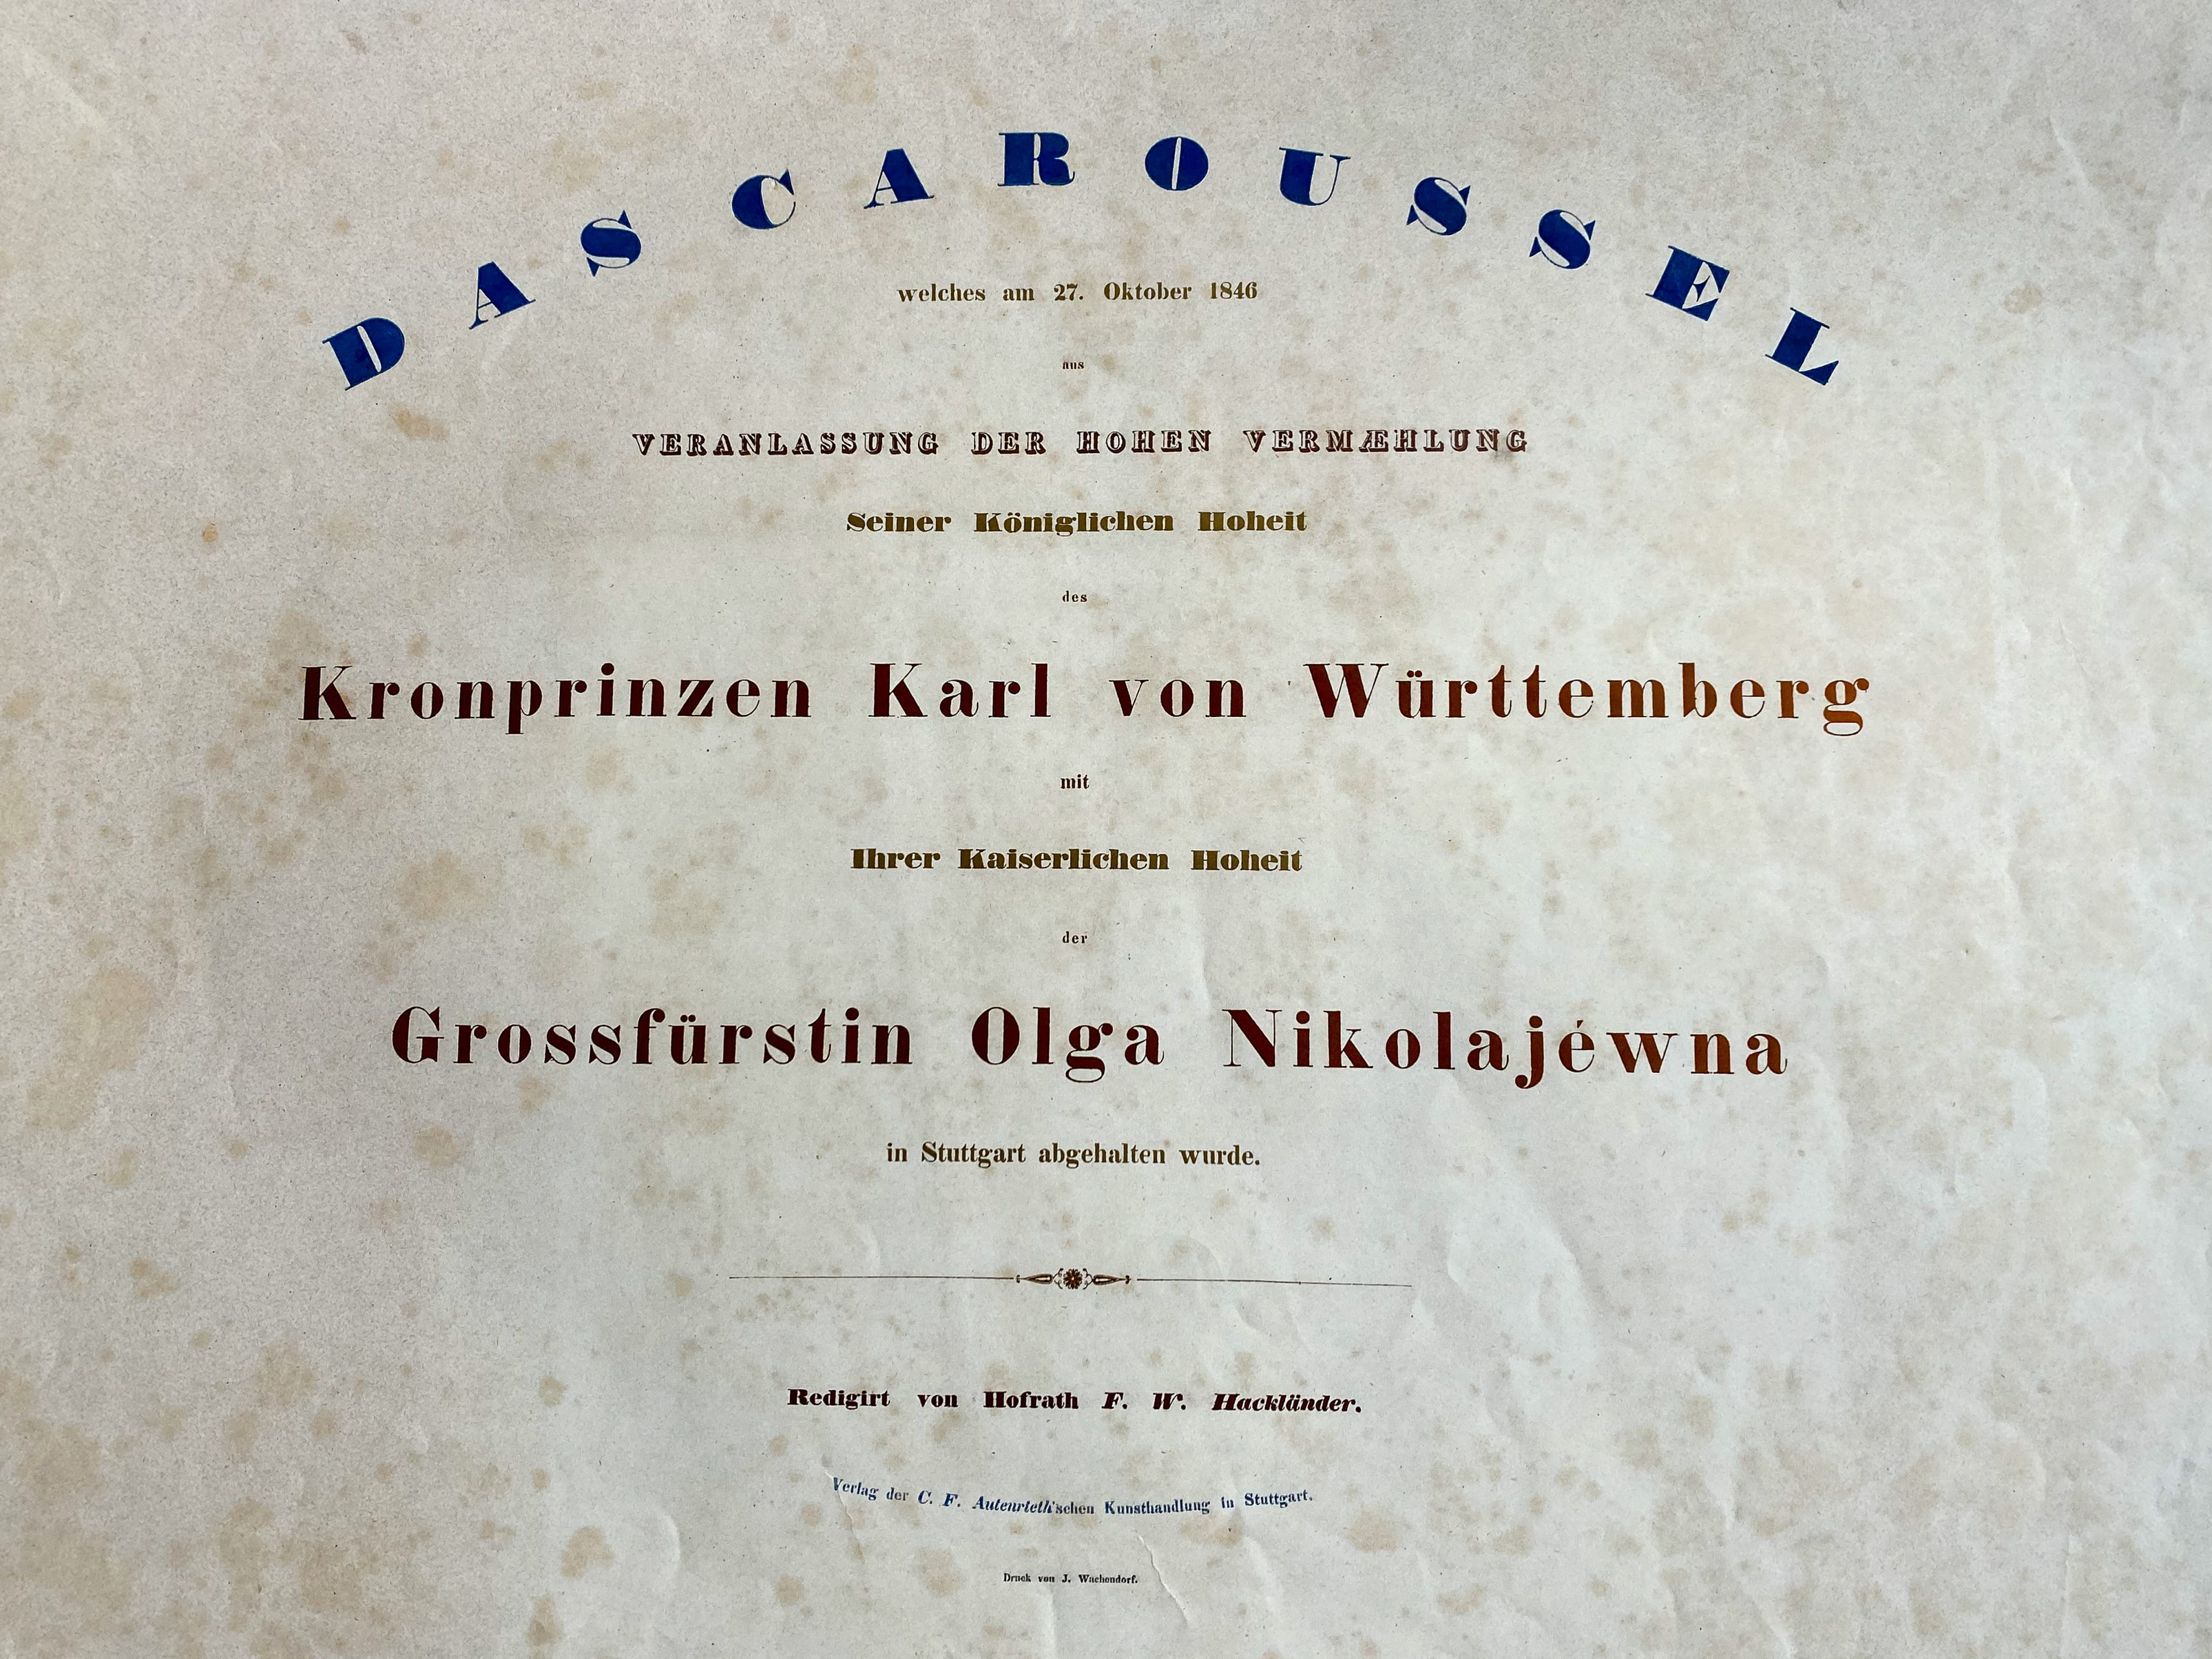 Reiterfest/Caroussel 1846: Eröffnung – Titelblatt der Mappe